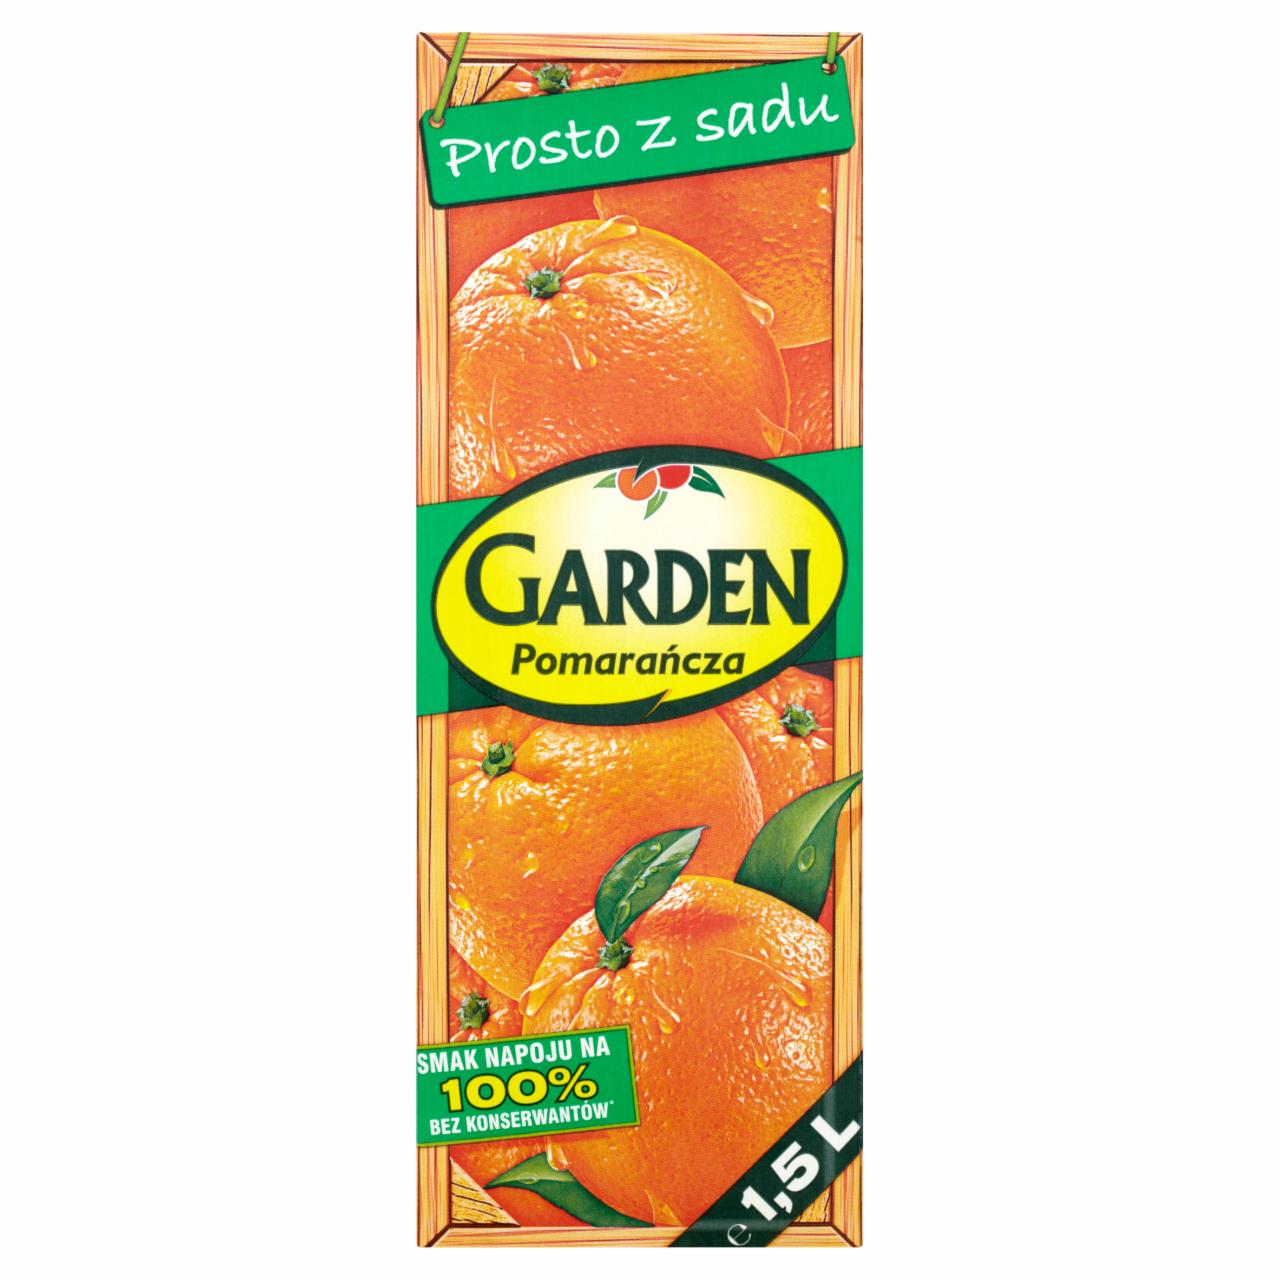 Zdjęcia - Garden Pomarańcza Napój 1,5 l